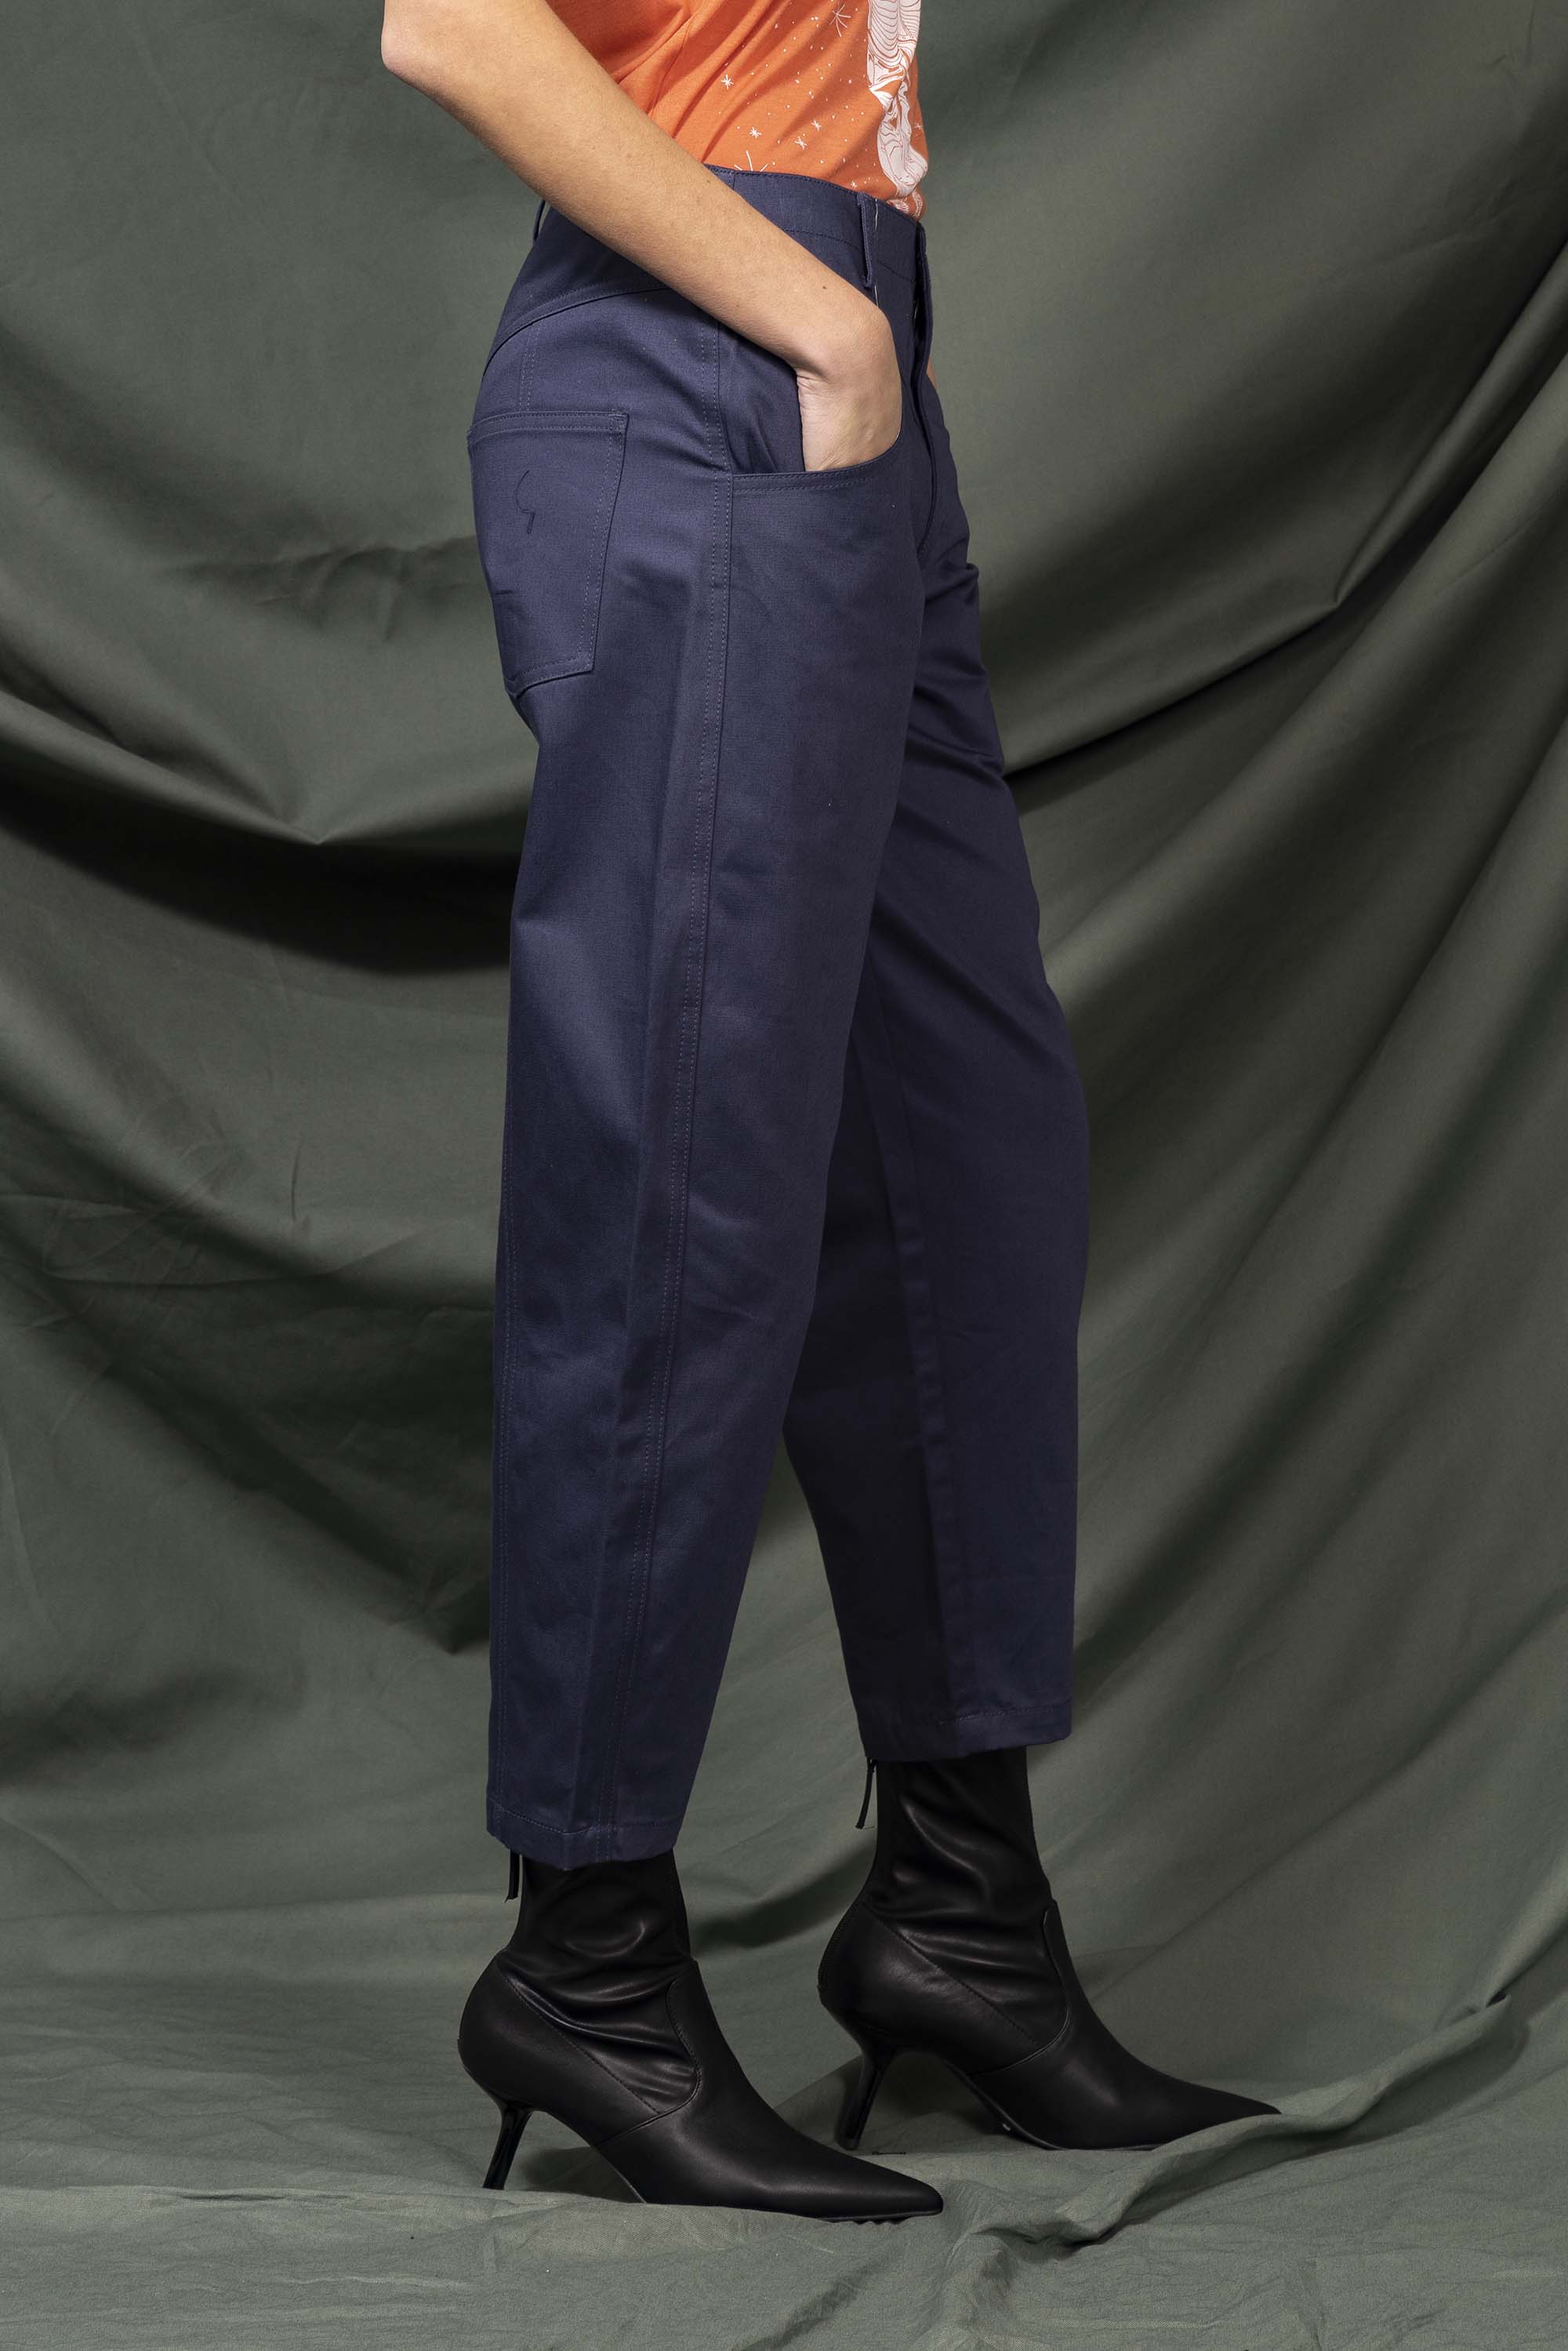 Pantalon Isabella Bleu de Prusse pièce intemporelle, élégance et poésie urbaine, fabrication certifiée